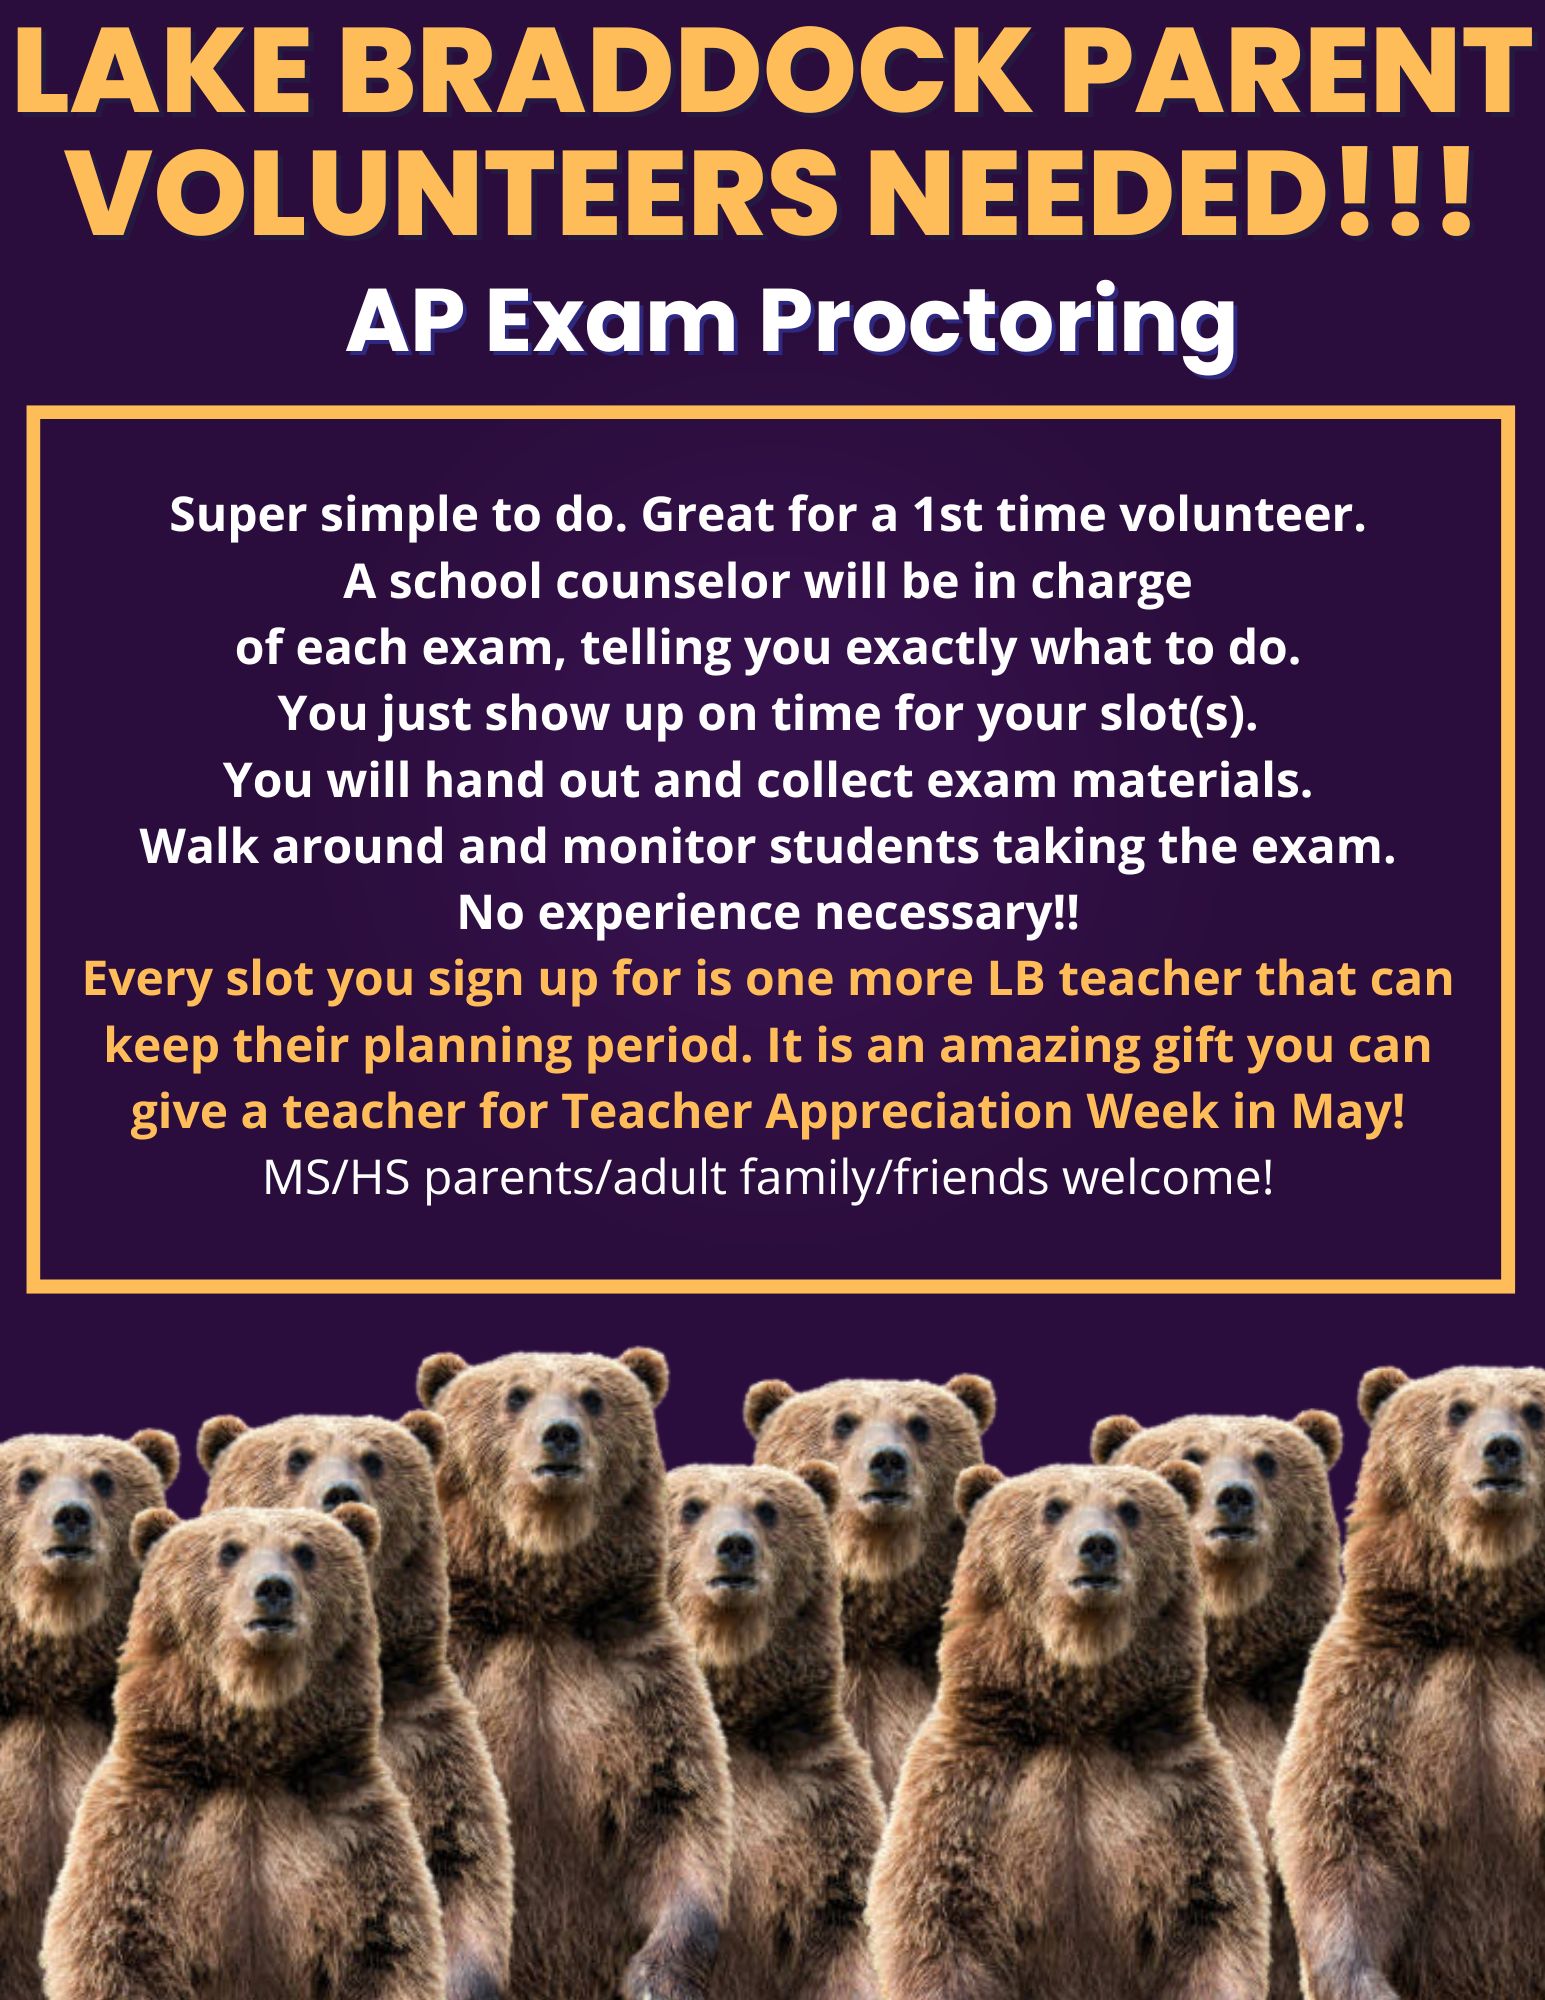 AP Exam Proctoring